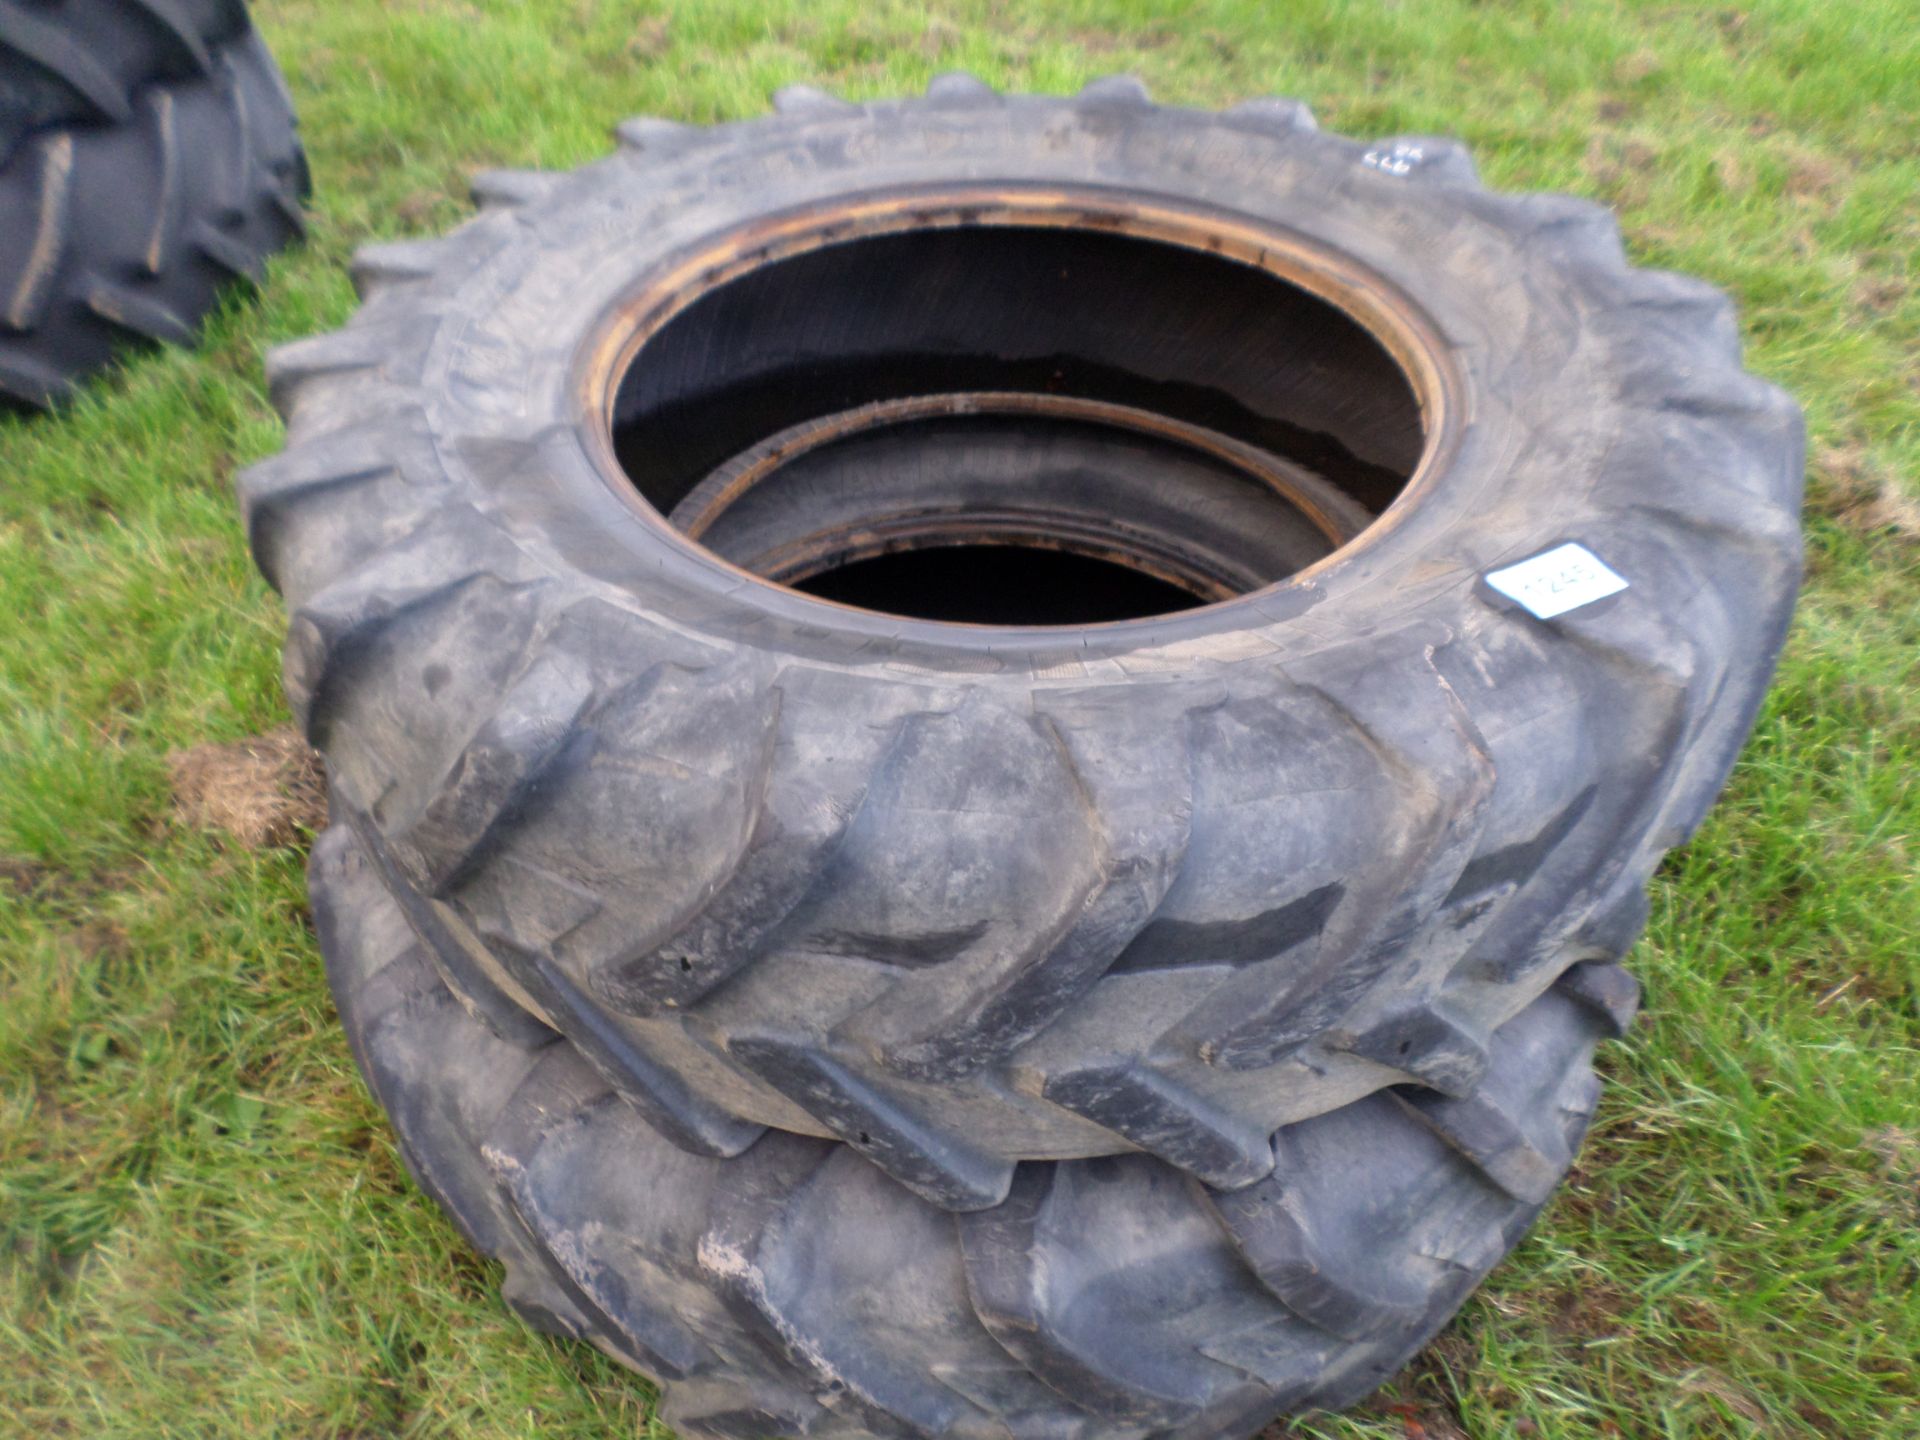 Pair of 14.9/28 dual wheel tyres